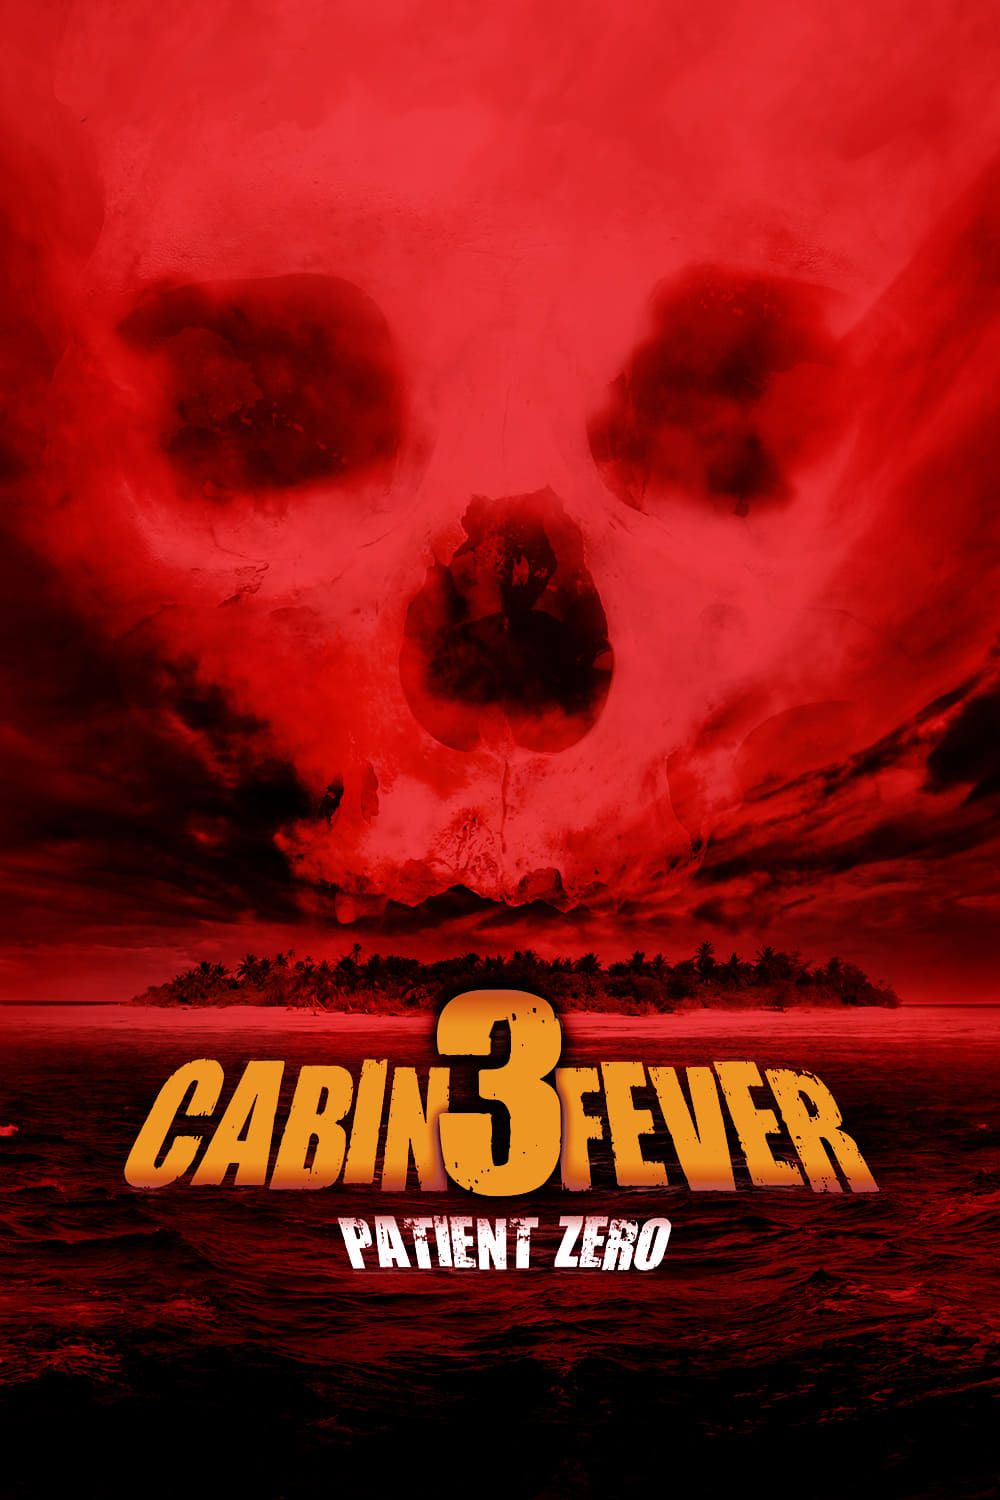 Cabin Fever 3